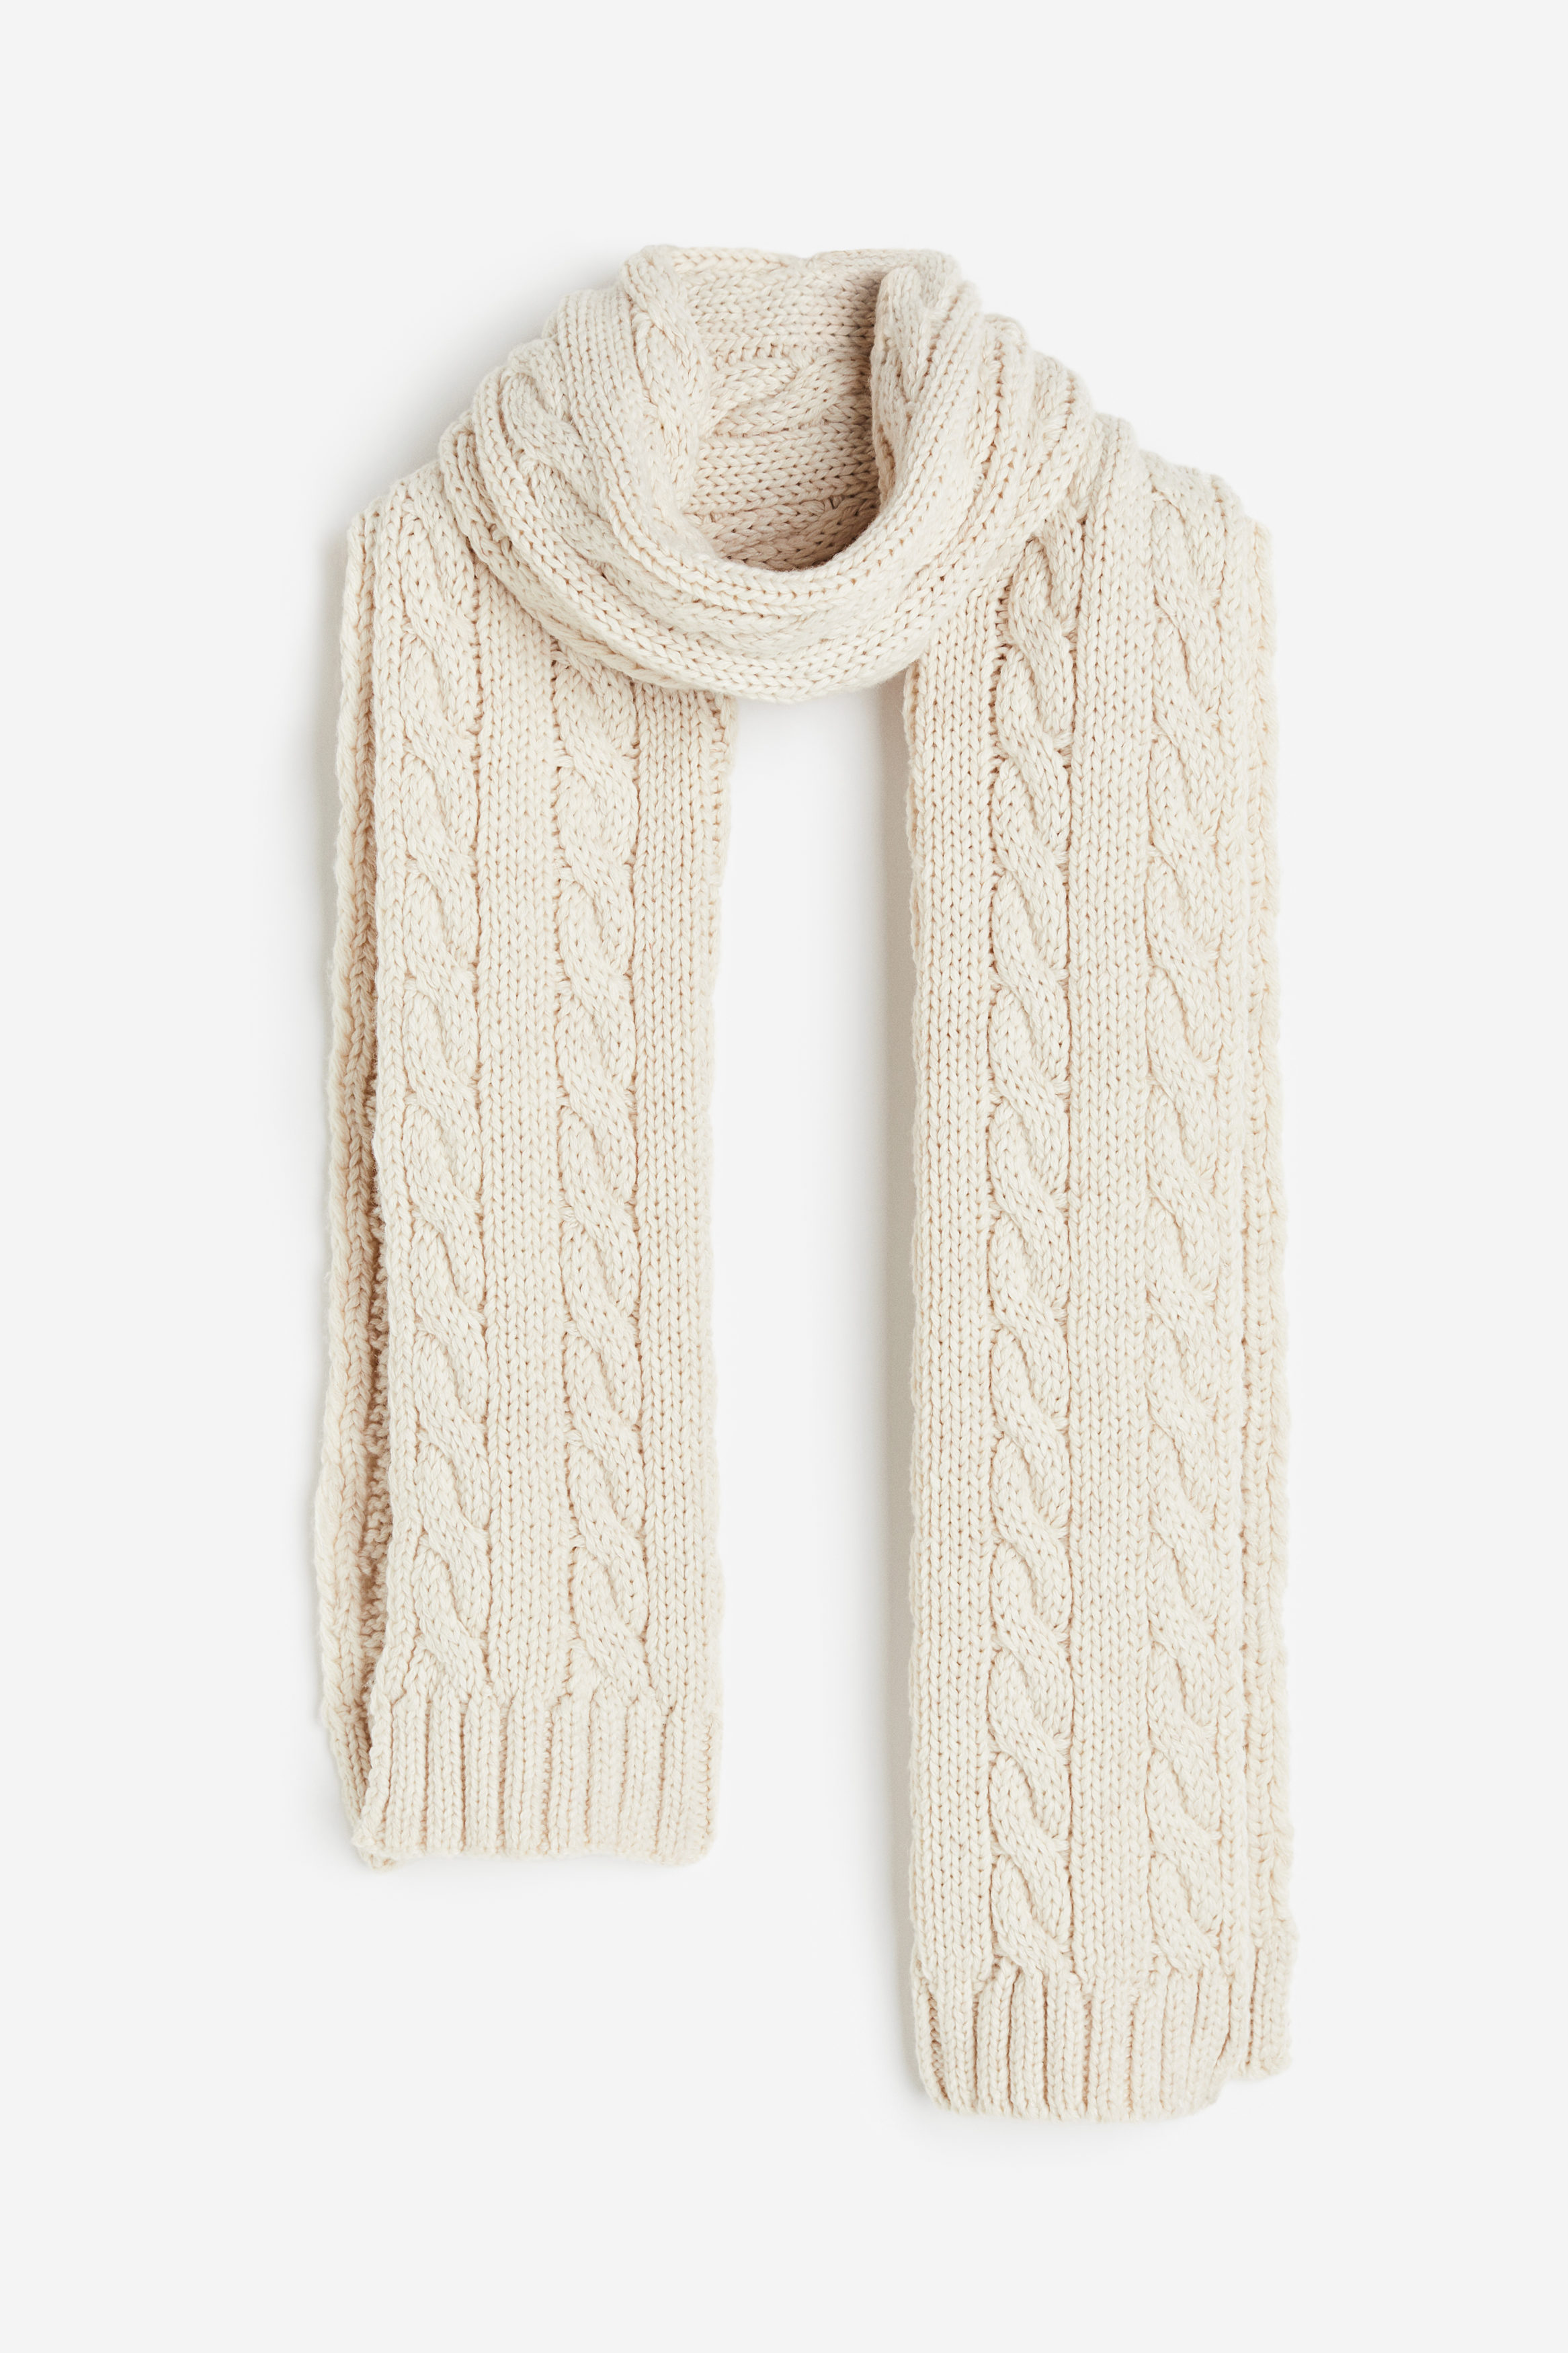 Billede af H&M Kabelstrikket Halstørklæde Lys Beige, Halstørklæder. Farve: Light beige I størrelse Onesize